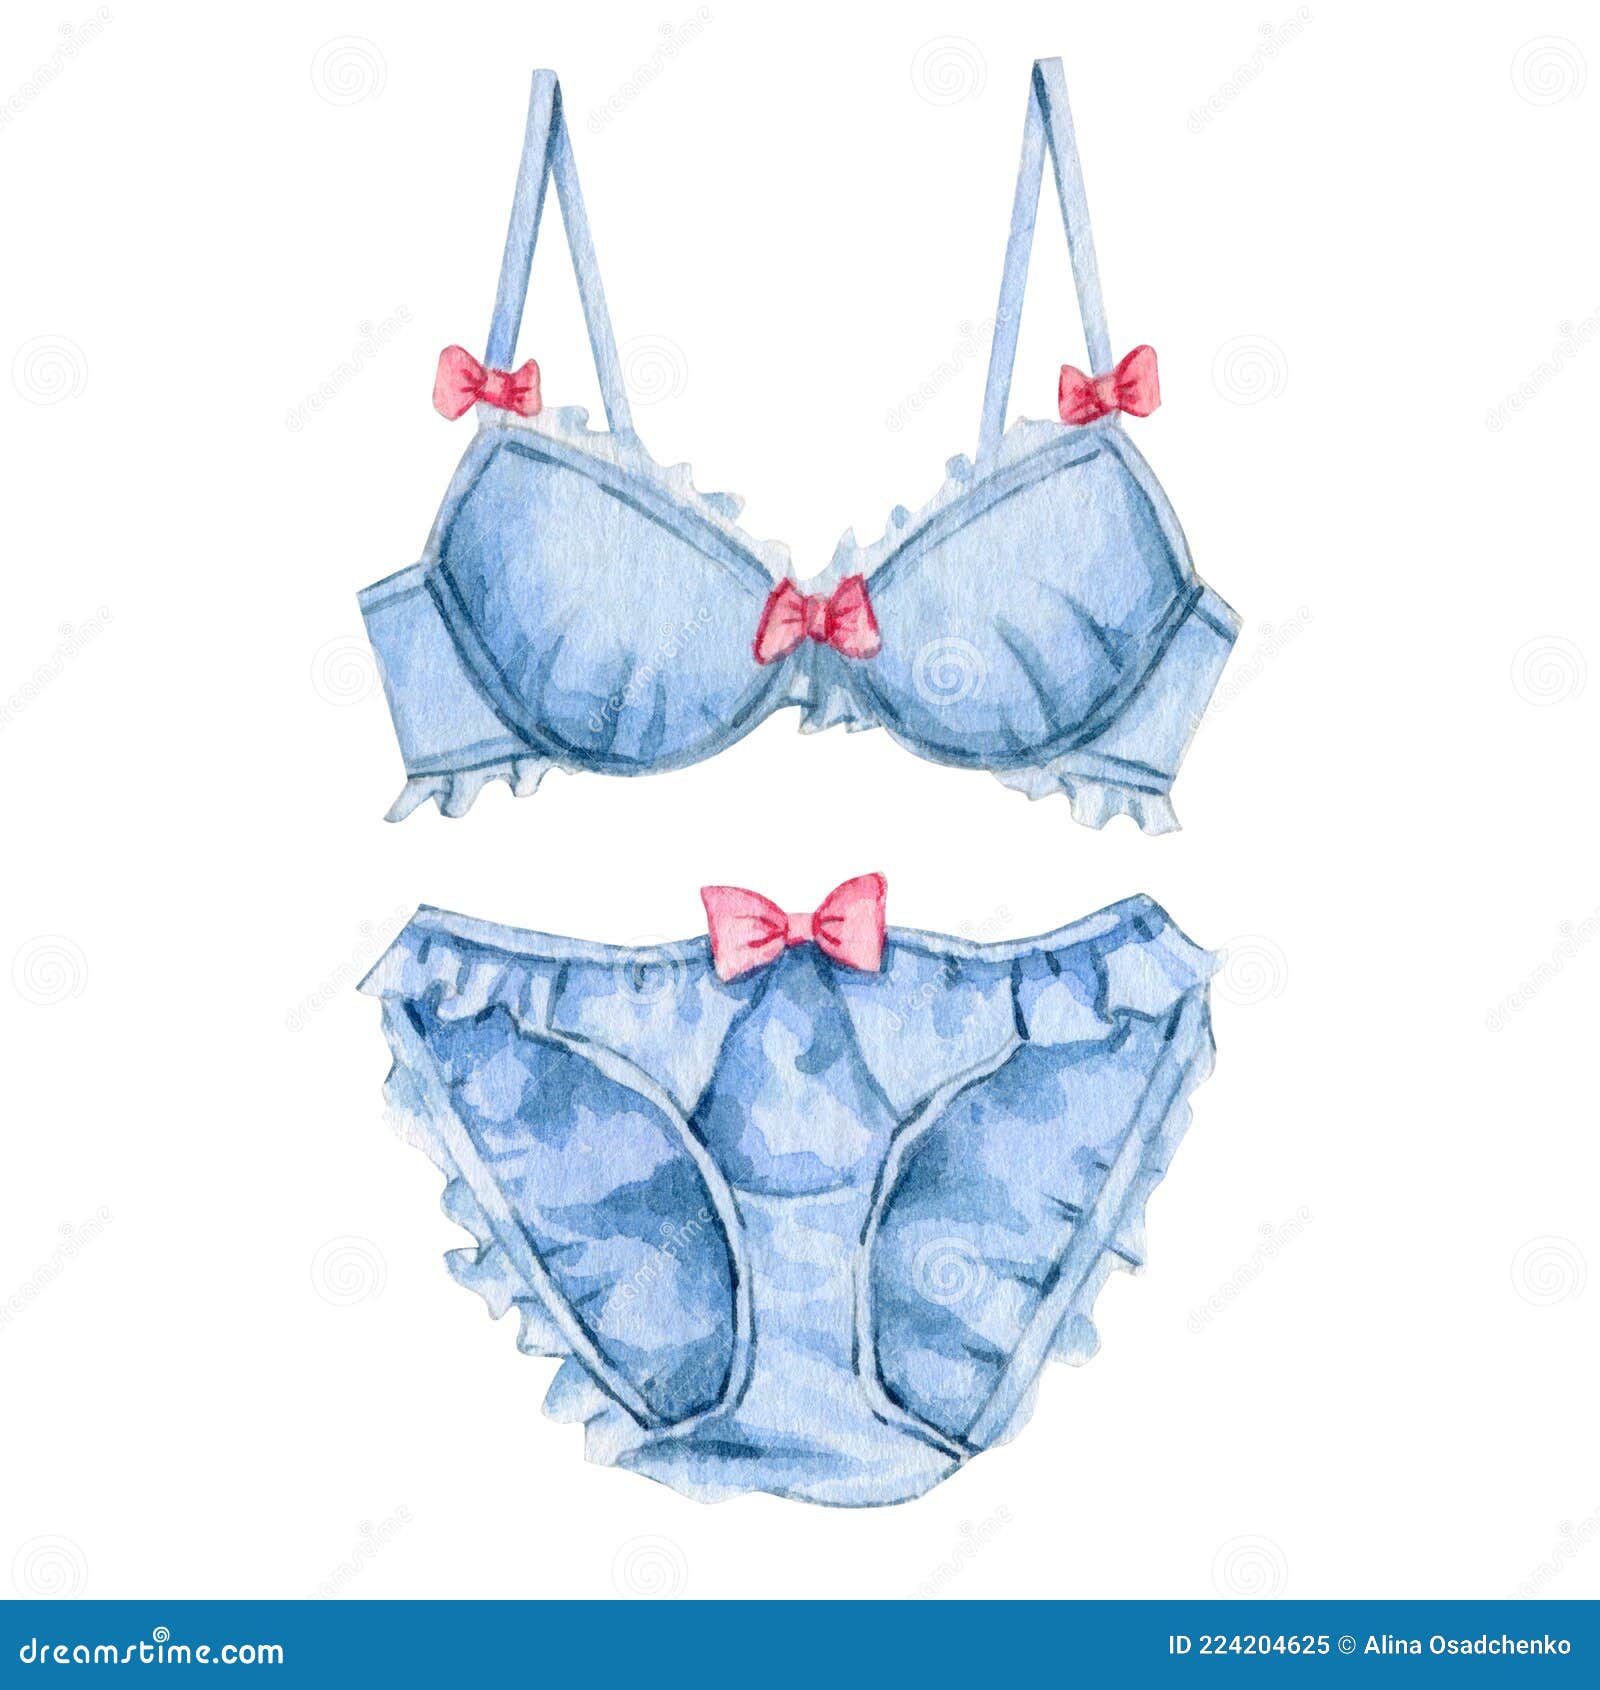 Watercolor Romantic Woman Lingerie Lace Underwear Illustration Stock  Illustration - Illustration of feminine, glamour: 224204625